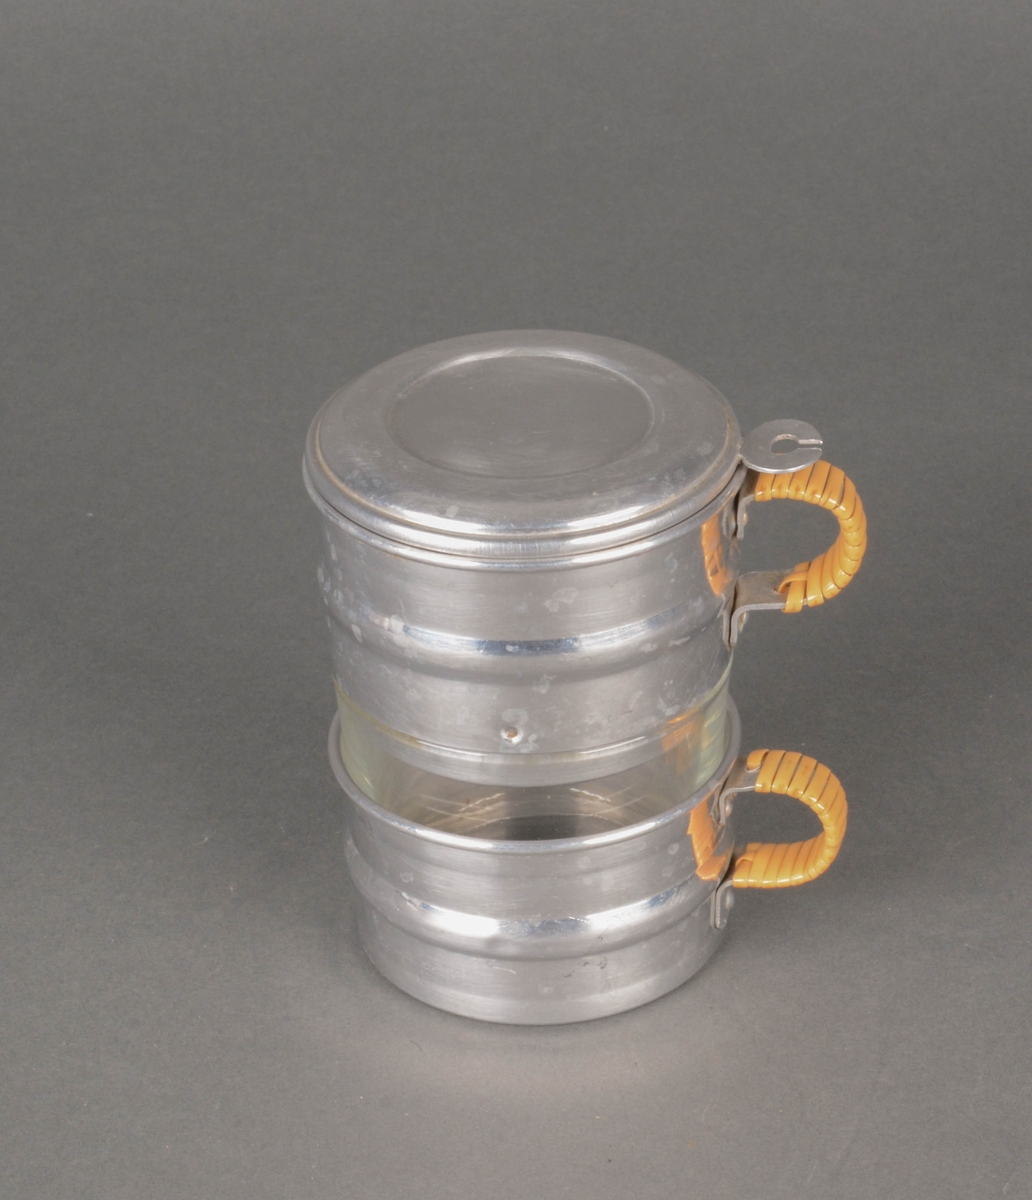 Teglass i 4 deler. Glassholder i metall med hank, glass, Tesil med hank og lokk.